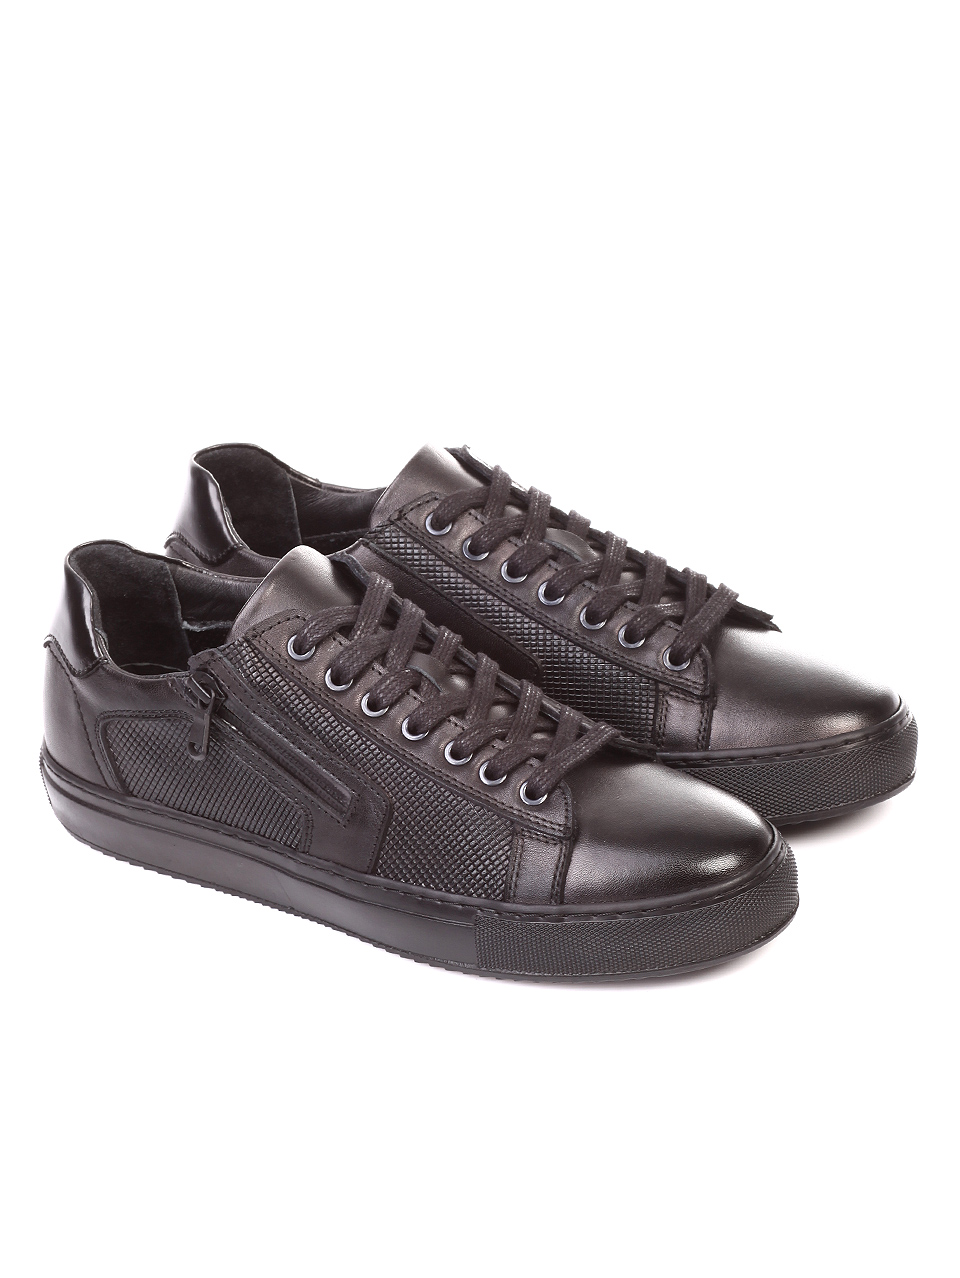 Ежедневни мъжки обувки от естествена кожа 7AT-181115 black